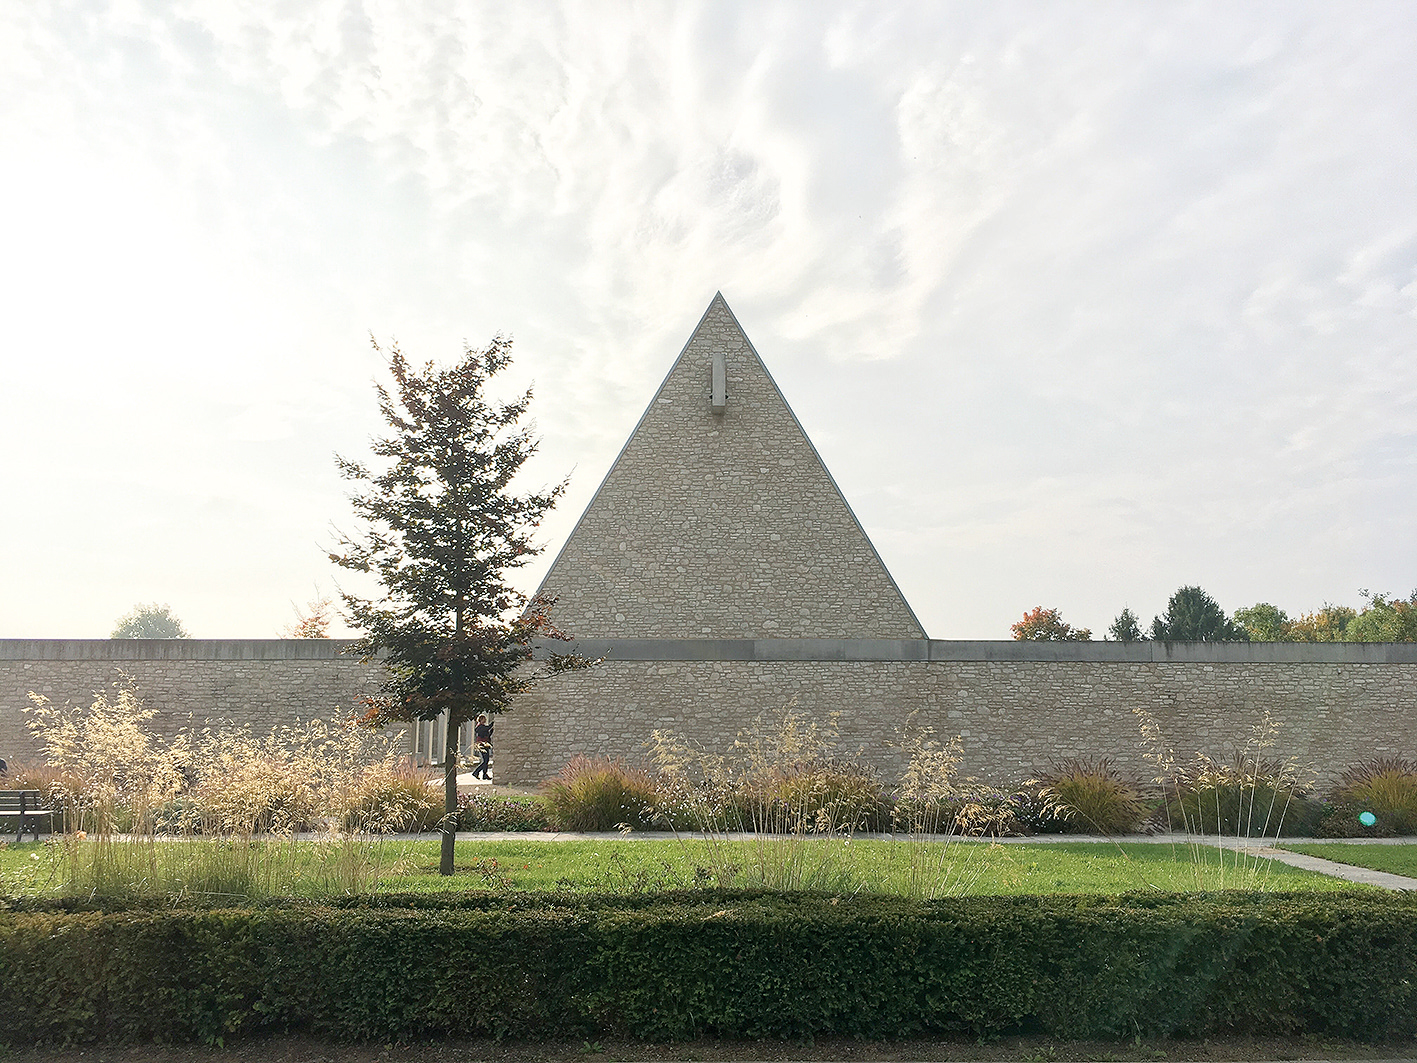 Cintorín v Ingelheime združuje kresťanské, islamské aj židovské hroby. Kvôli blízkosti rieky Rýn sa v ňom pochováva nielen do zeme, ale aj formou kolumbária. (Foto: Ján Vaňura)